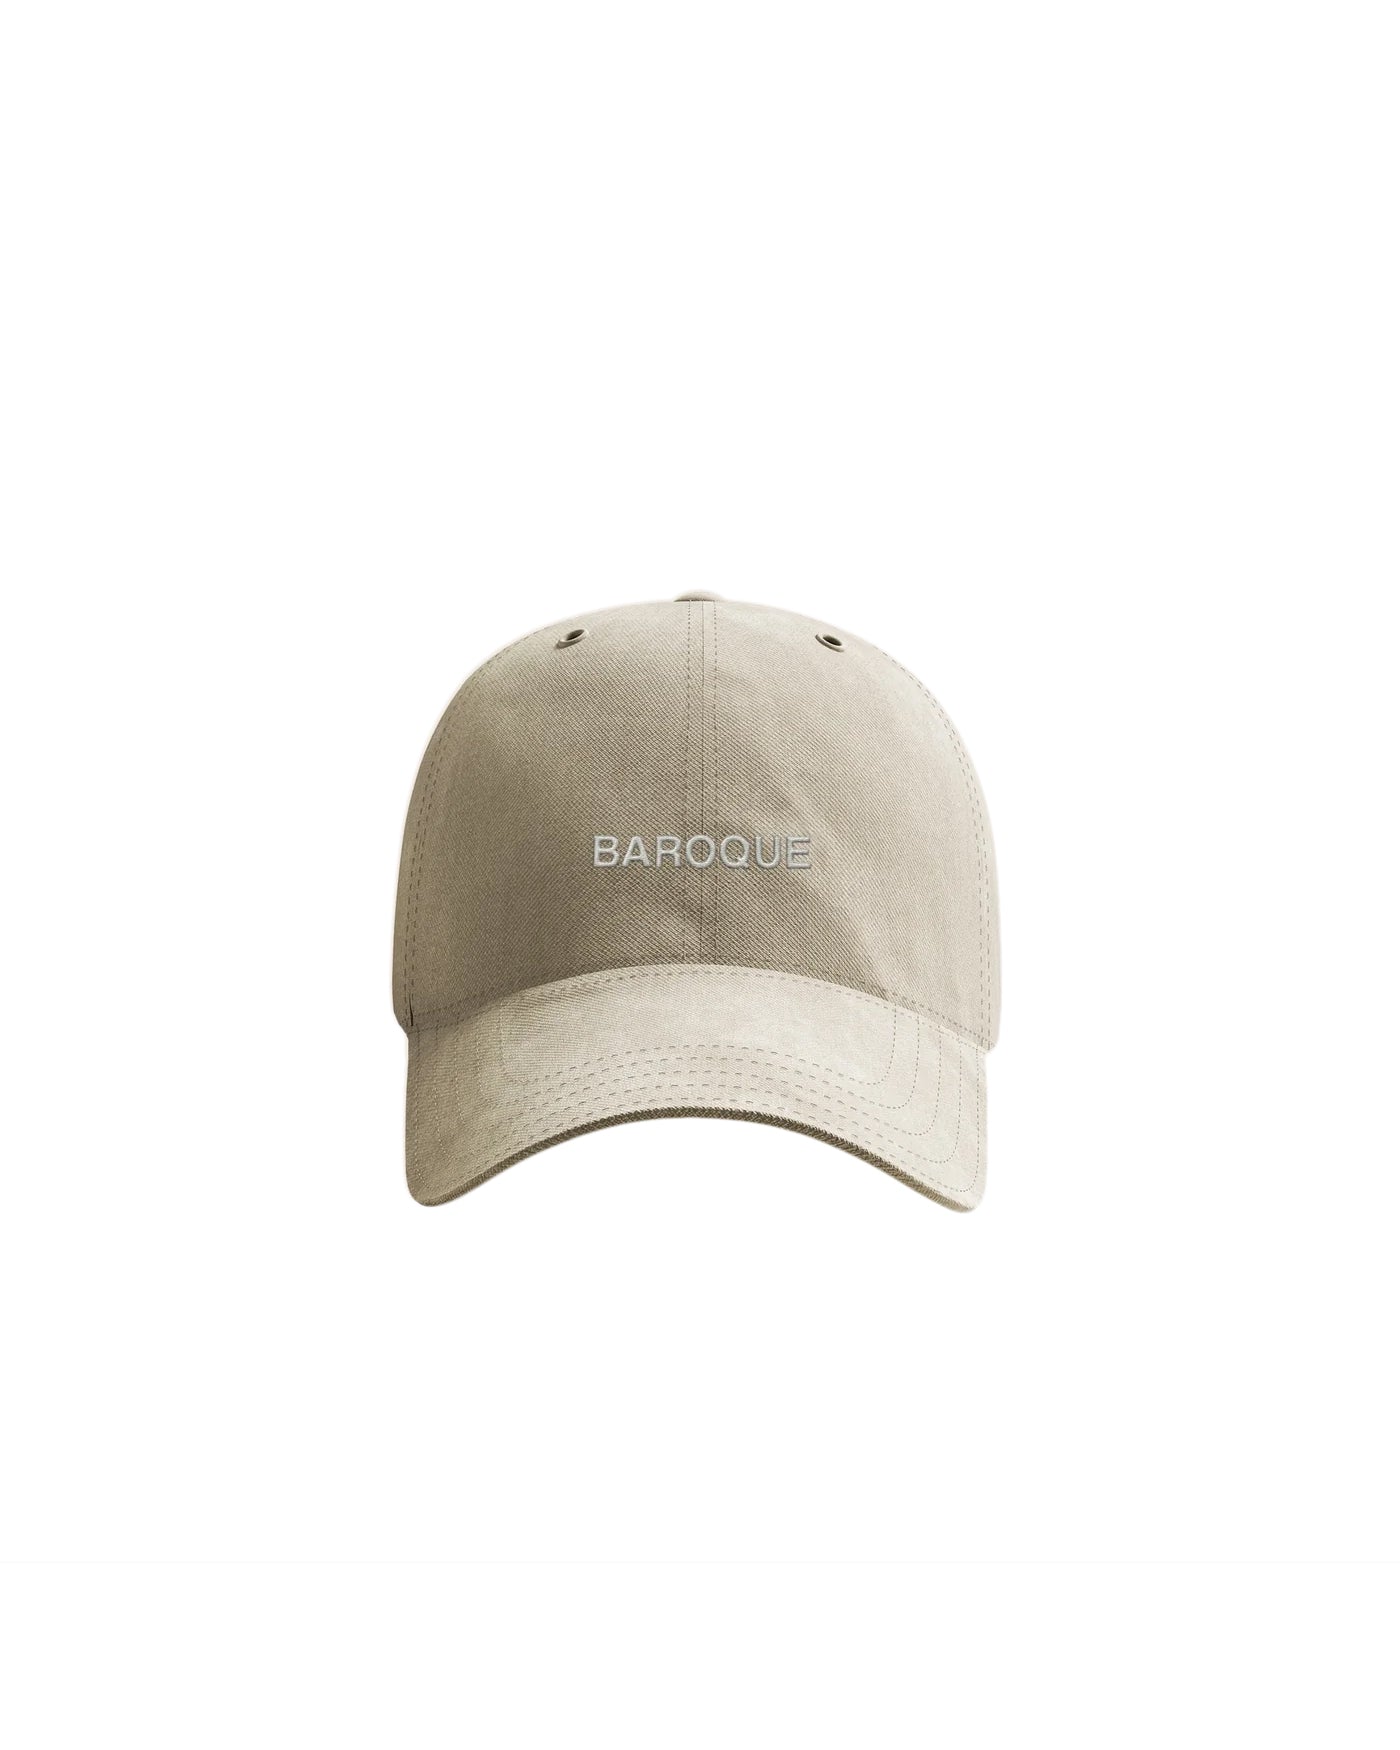 Baroque Dad Hat